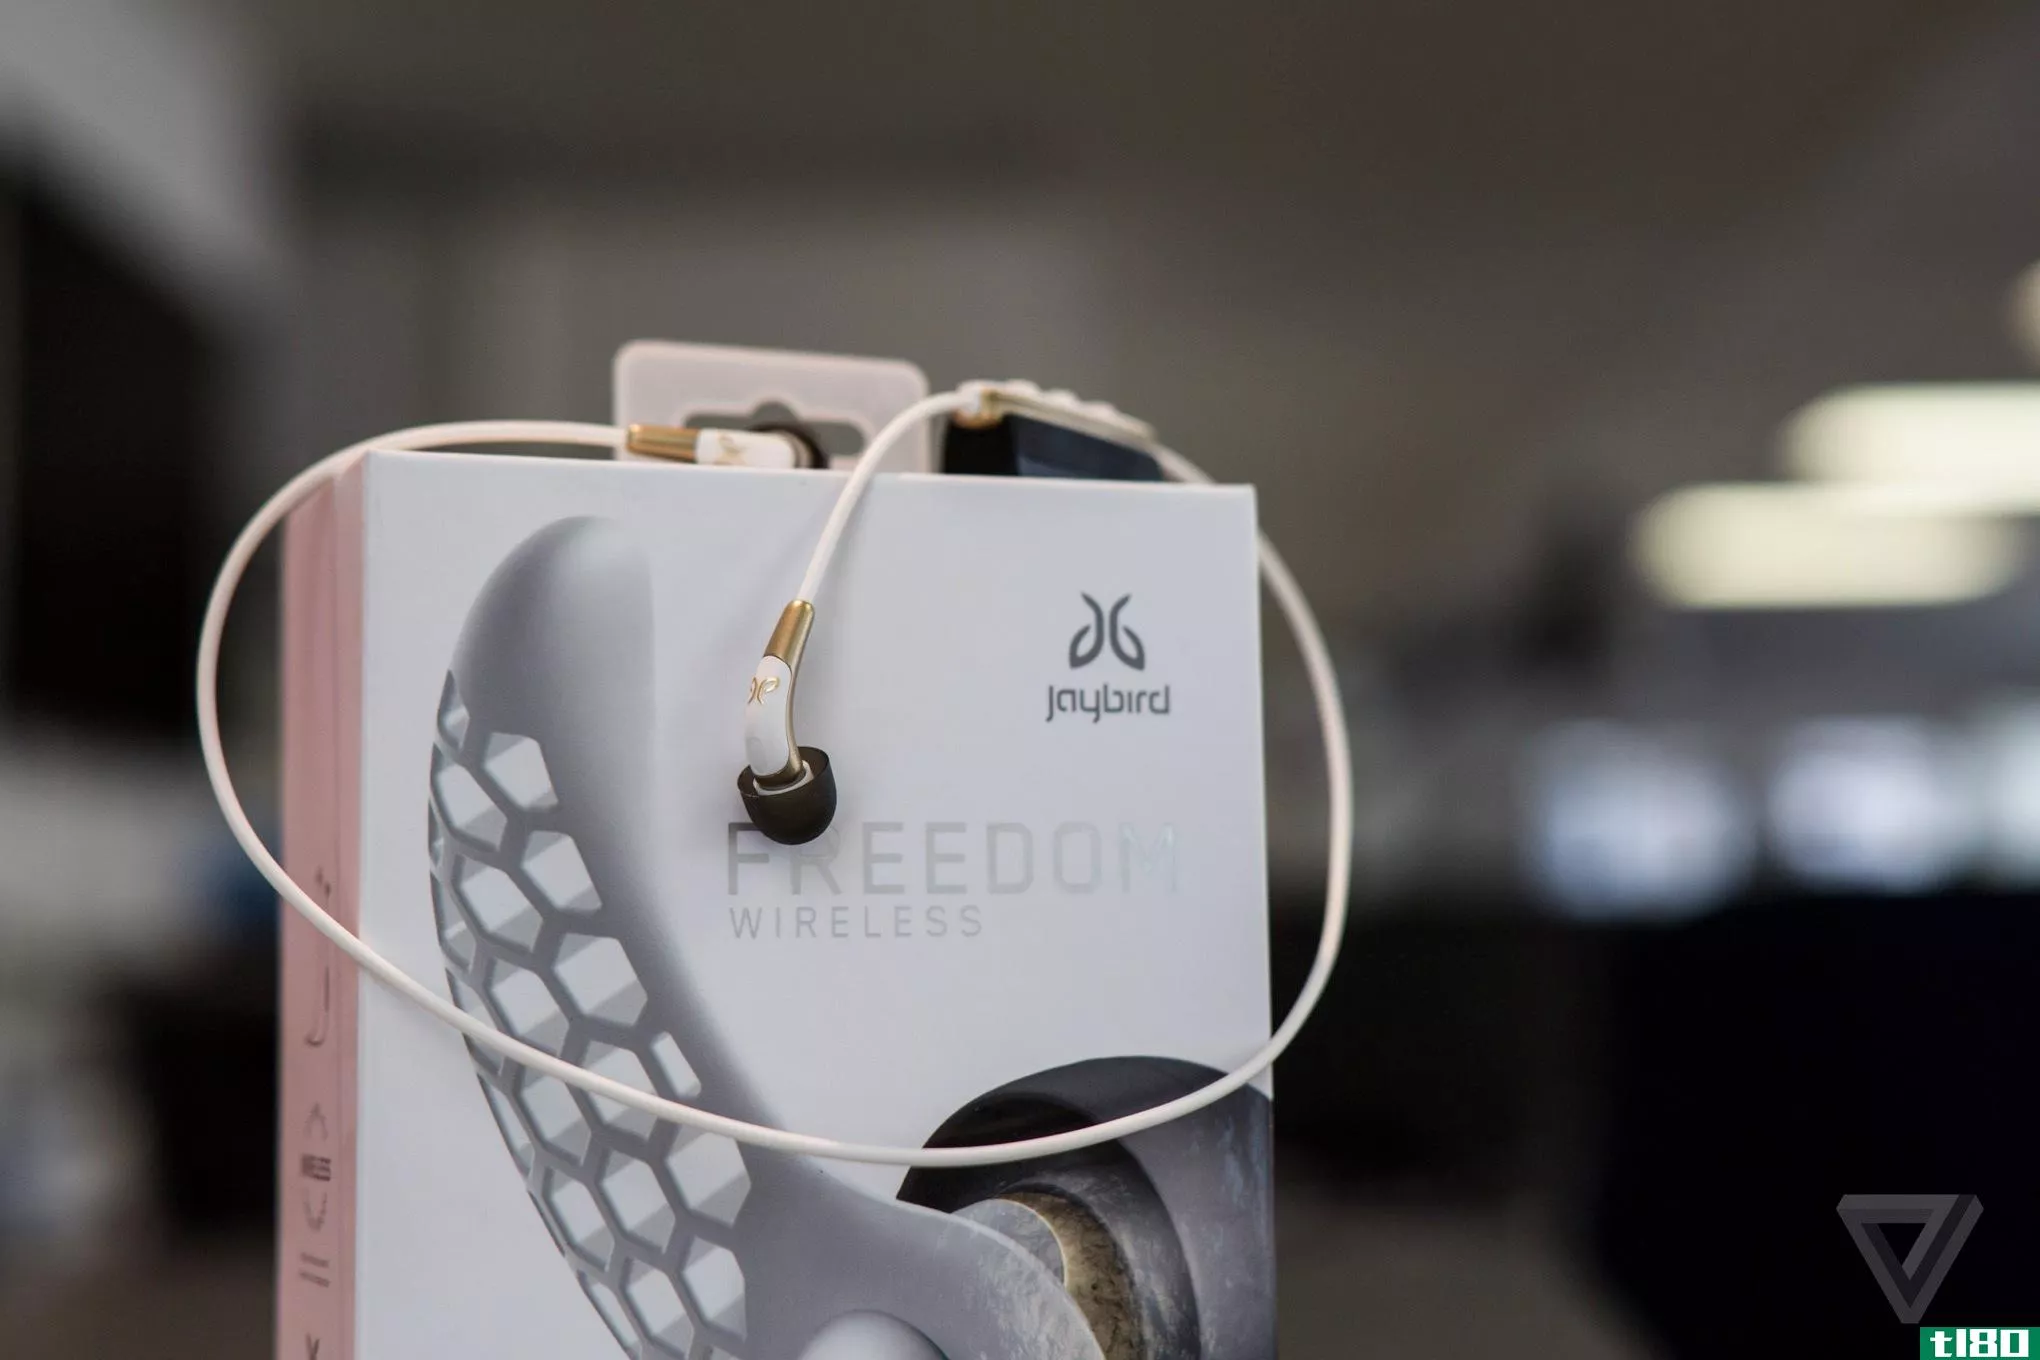 jaybird的新freedom耳机有可定制的声音和便携式电池组